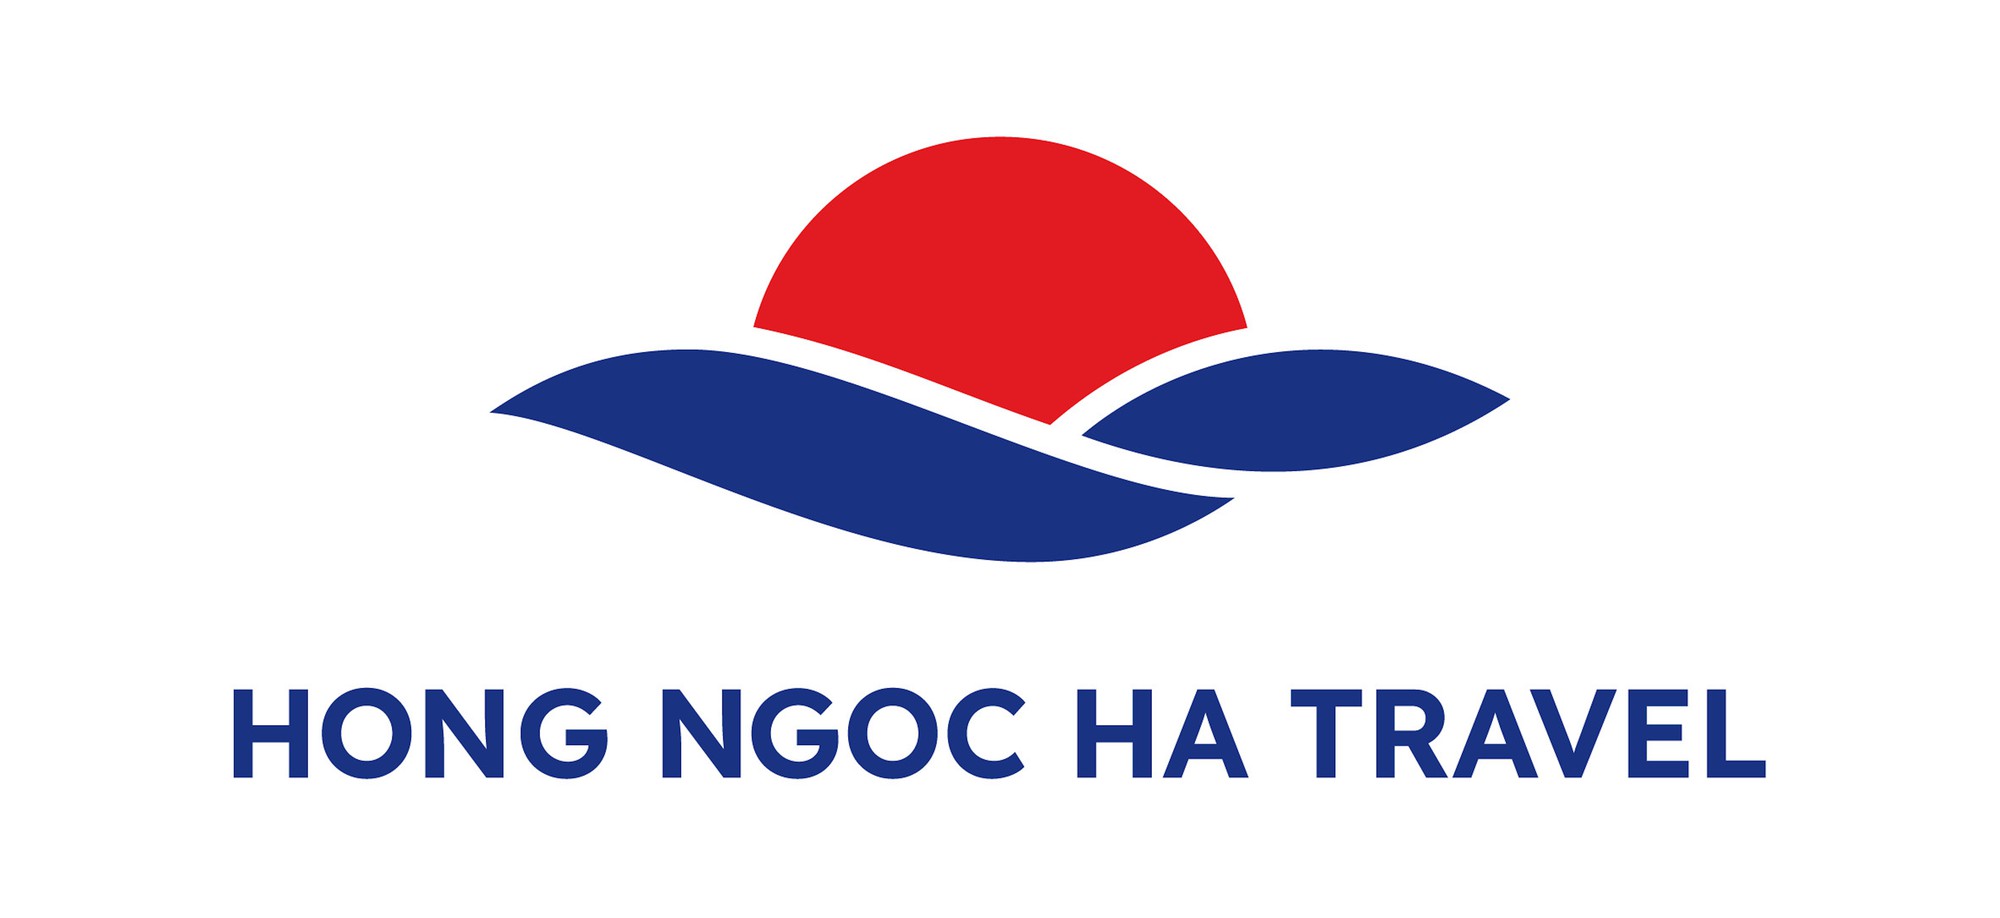 Hồng Ngọc Hà Travel ra mắt nhận diện thương hiệu mới - Ảnh 1.